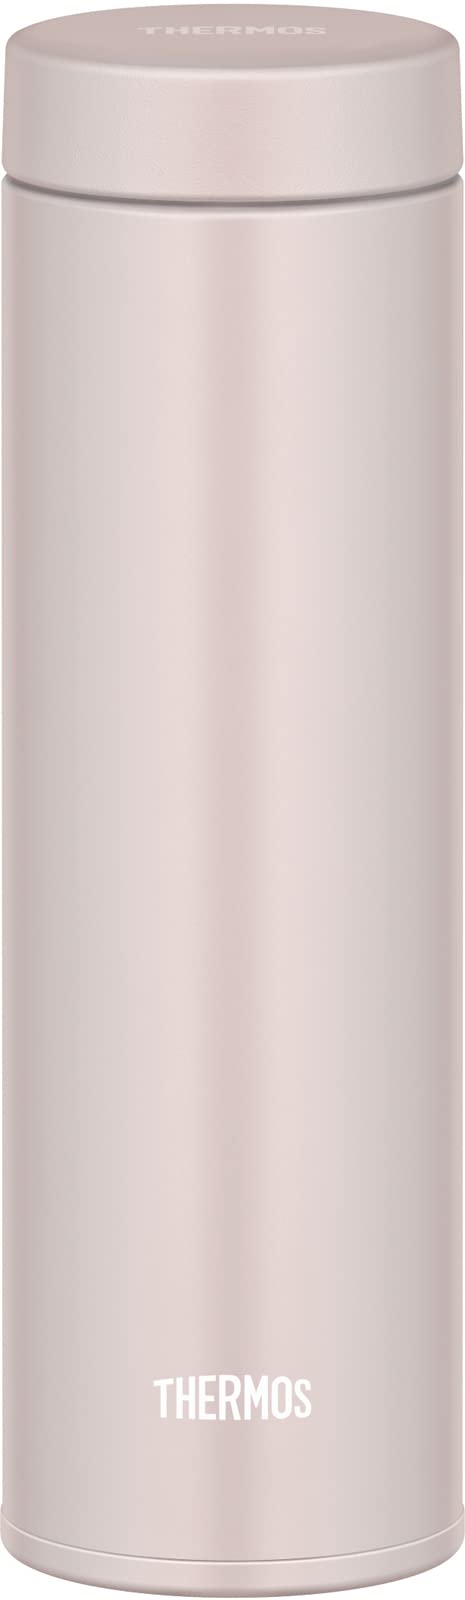 THERMOS 真空断熱ケータイマグ 0.48L （ピンクグレージュ）JON-480 PGG 水筒の商品画像